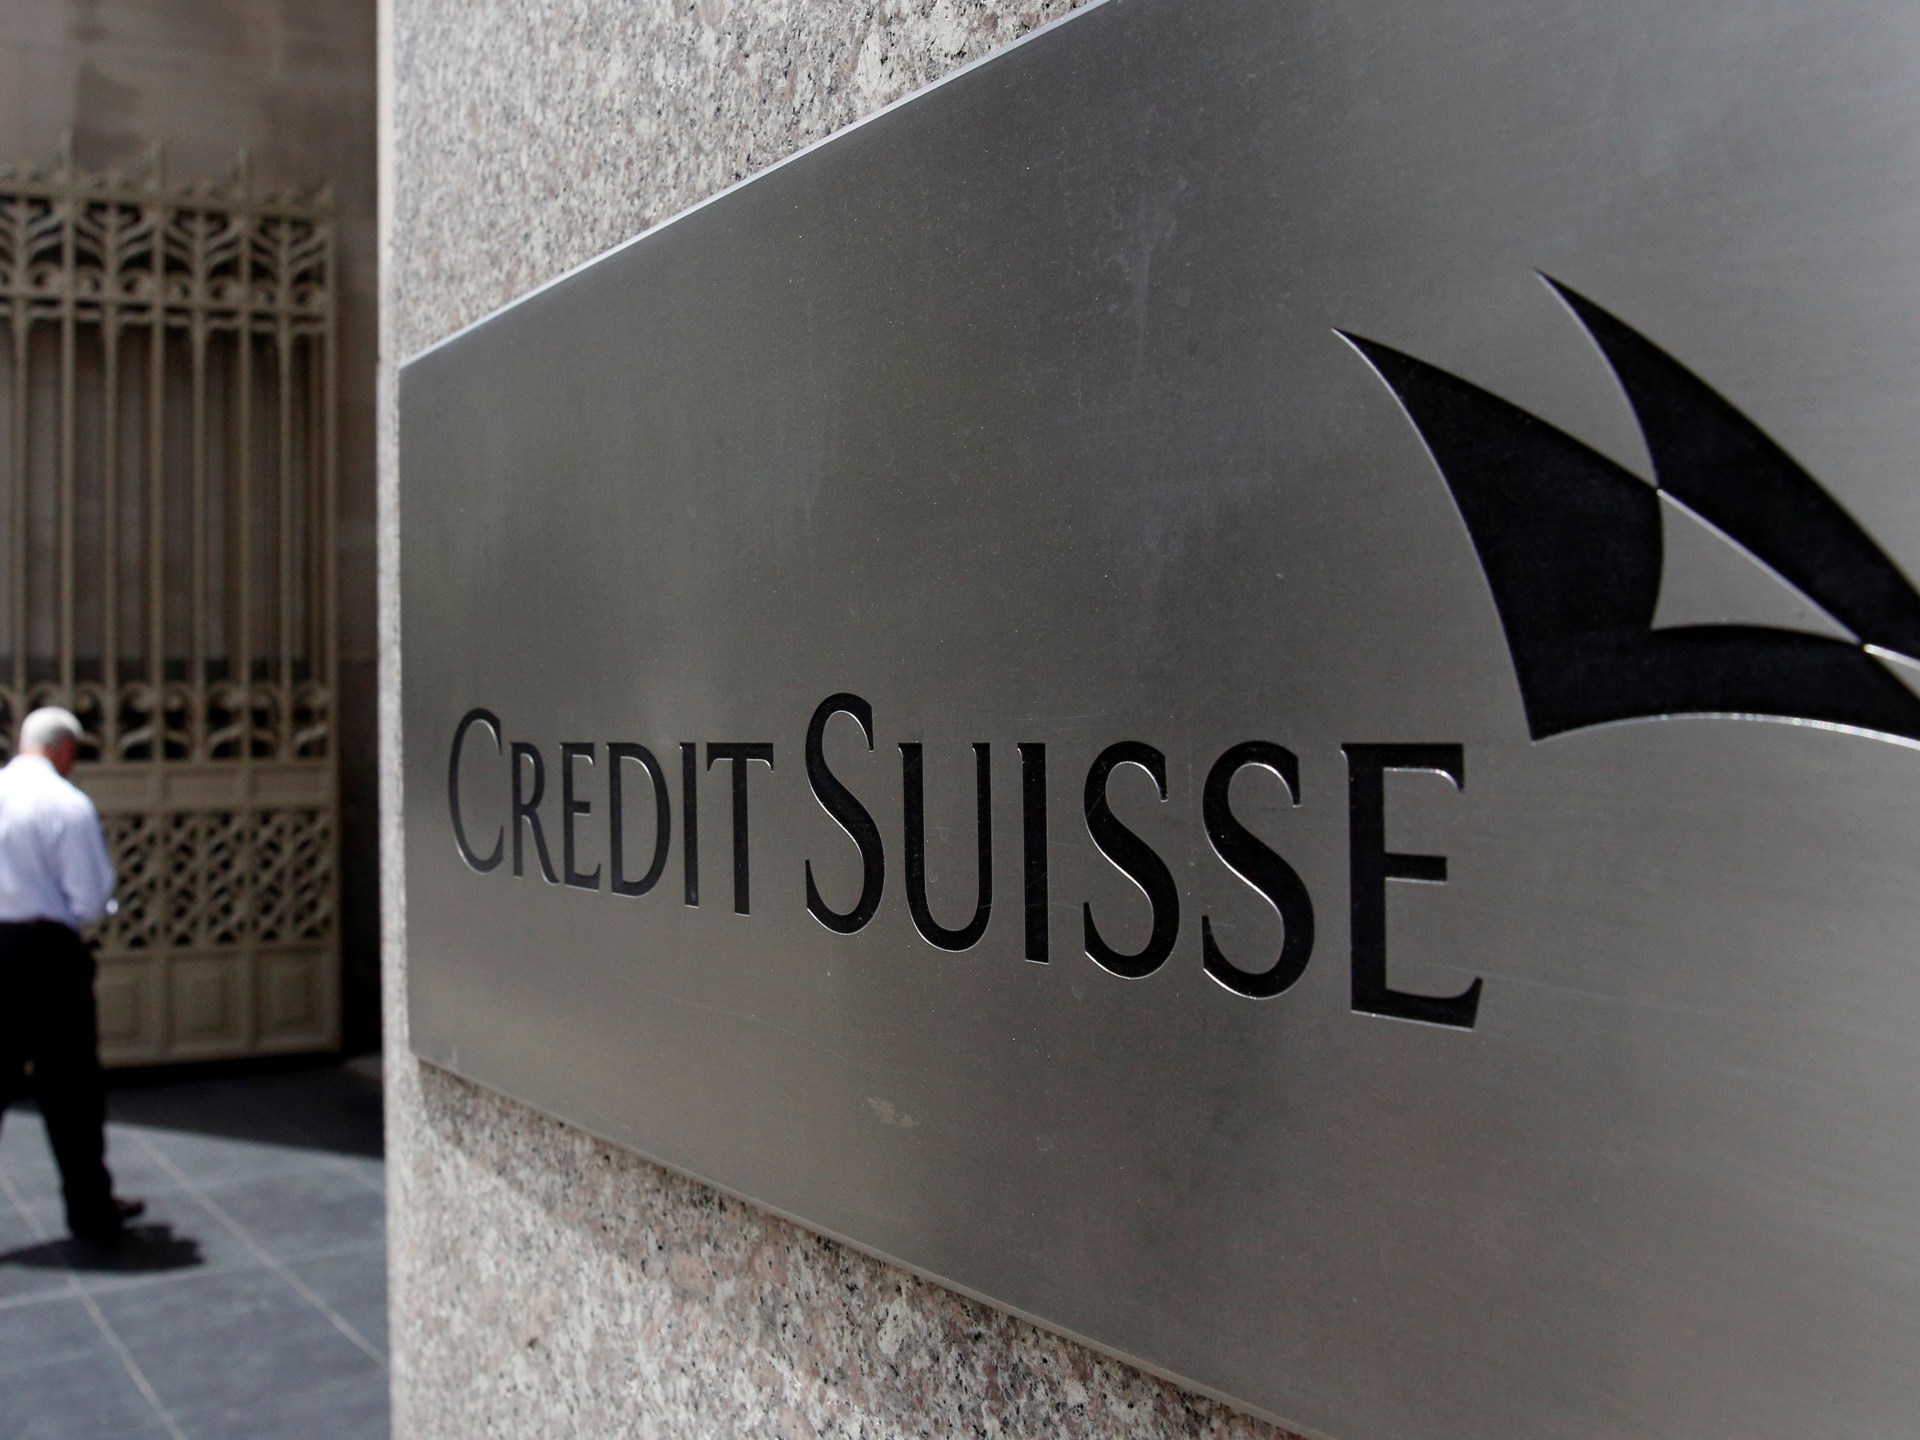 Spadek Credit Suisse odnawia obawy przed globalnym kryzysem bankowym |  Wiadomości z rynku finansowego